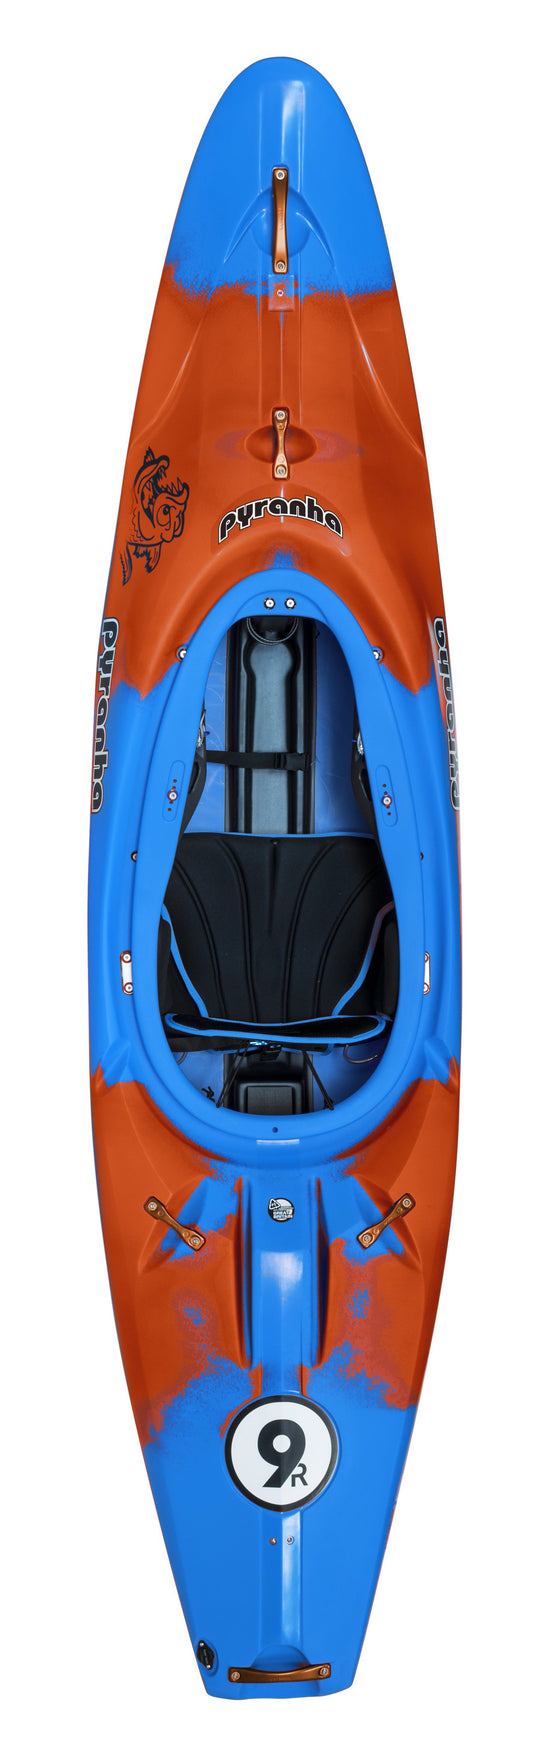 9R II Whitewater Kayak